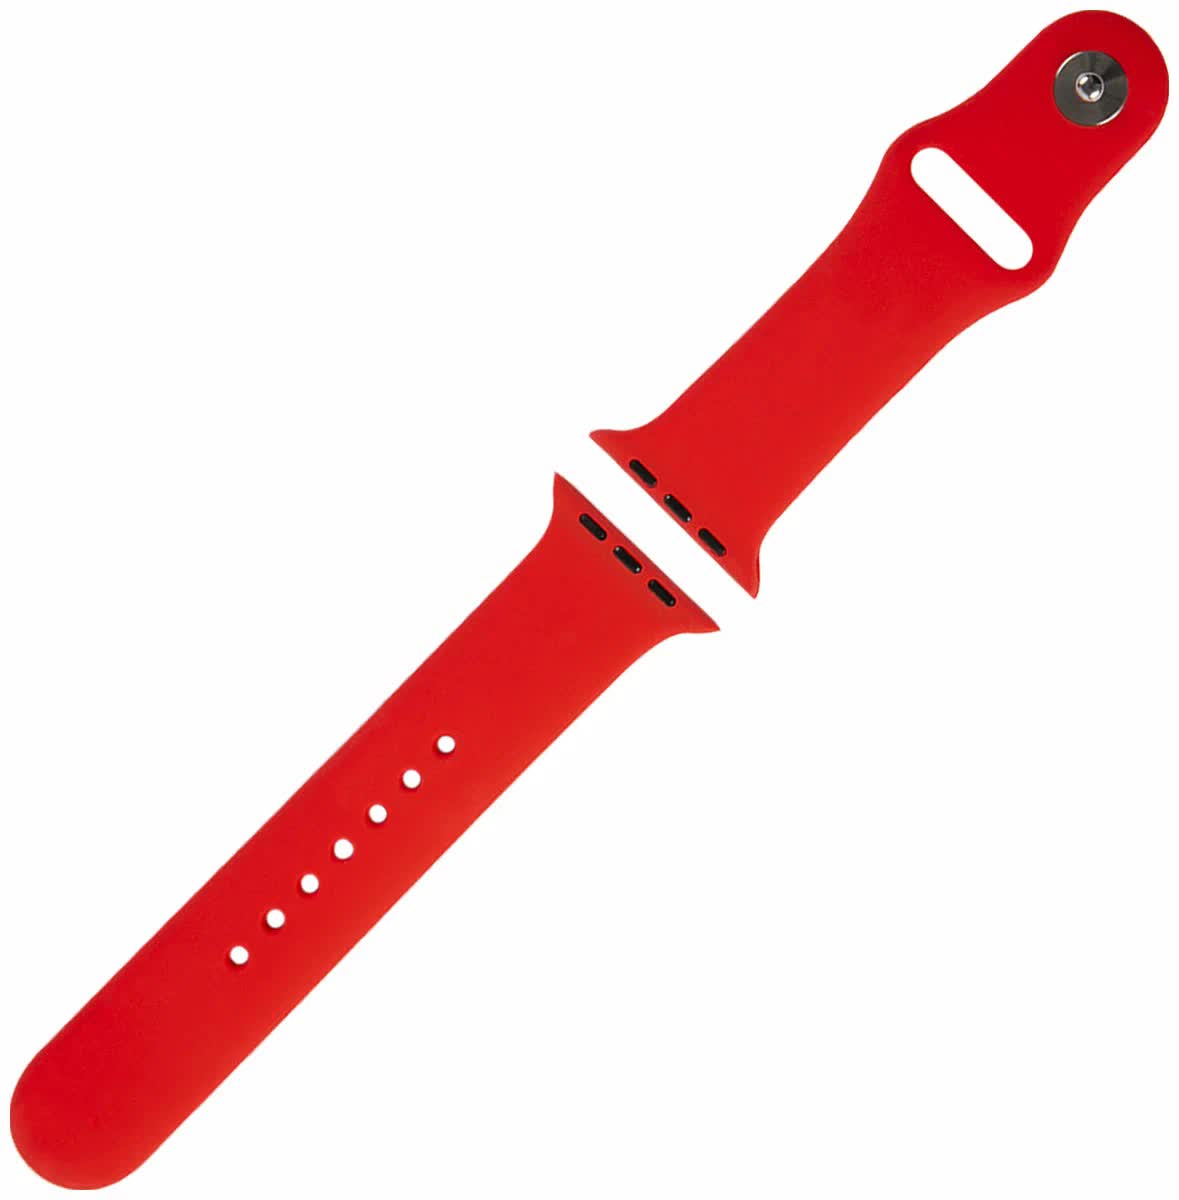 Ремешок Red Line силиконовый для Apple Watch – 38/40 mm (S3/S4/S5/SE/S6), красный УТ000027228 ремешок red line силиконовый для apple watch – 38 40 mm s3 s4 s5 se s6 синий ут000027227